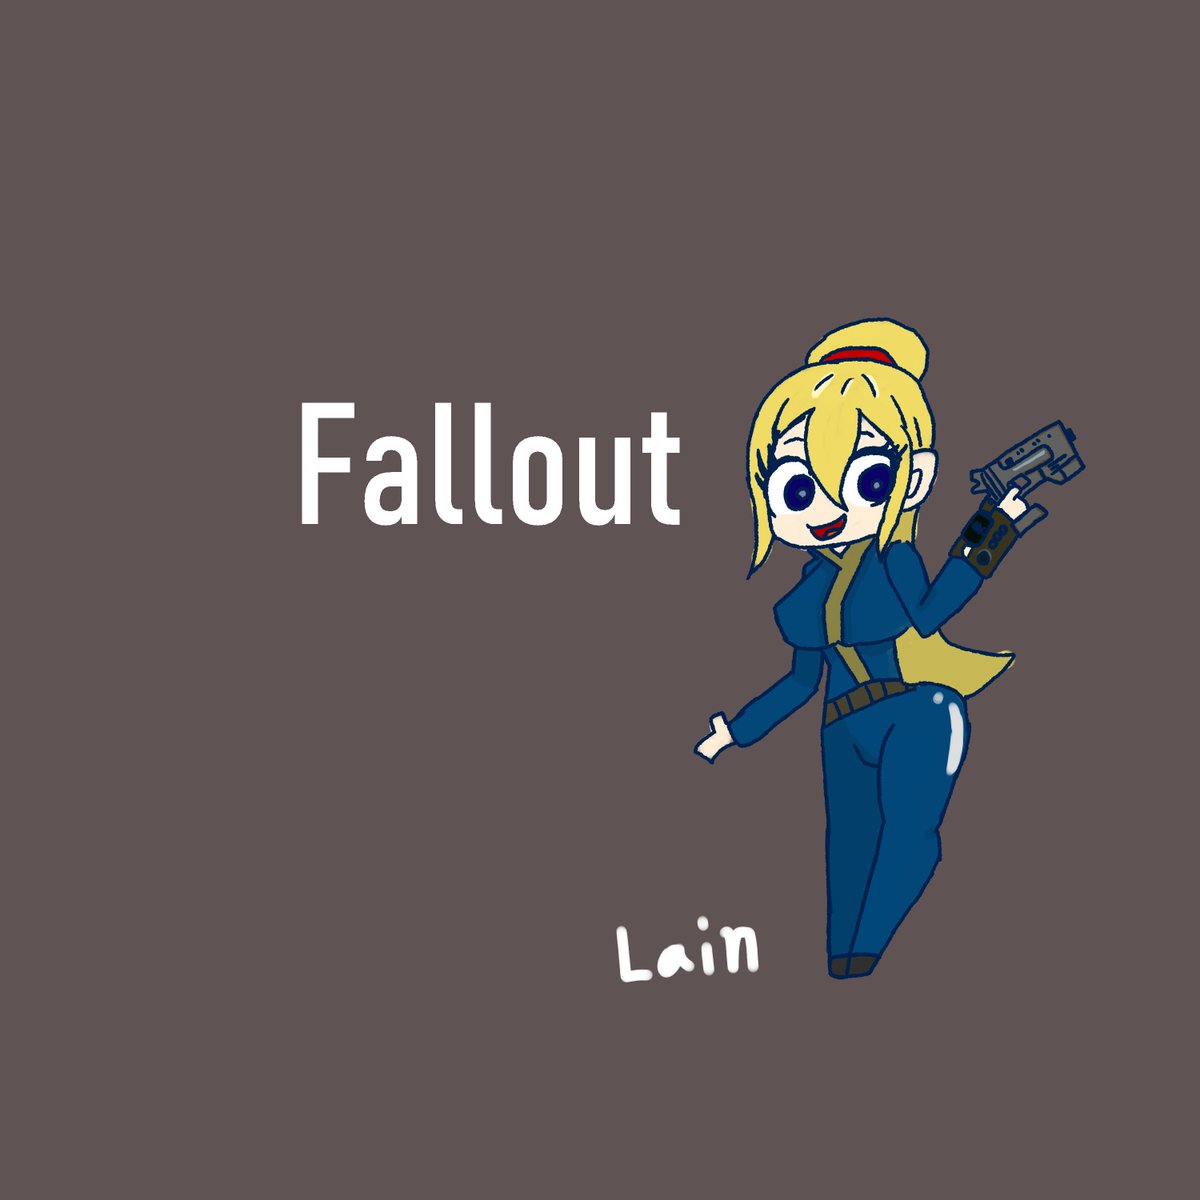 Lain ふくふく Falloutのジャンプスーツきた娘 あったレイダーは死ぬ 無慈悲 Fallout イラスト イラスト好きな人と繋がりたい Illustration